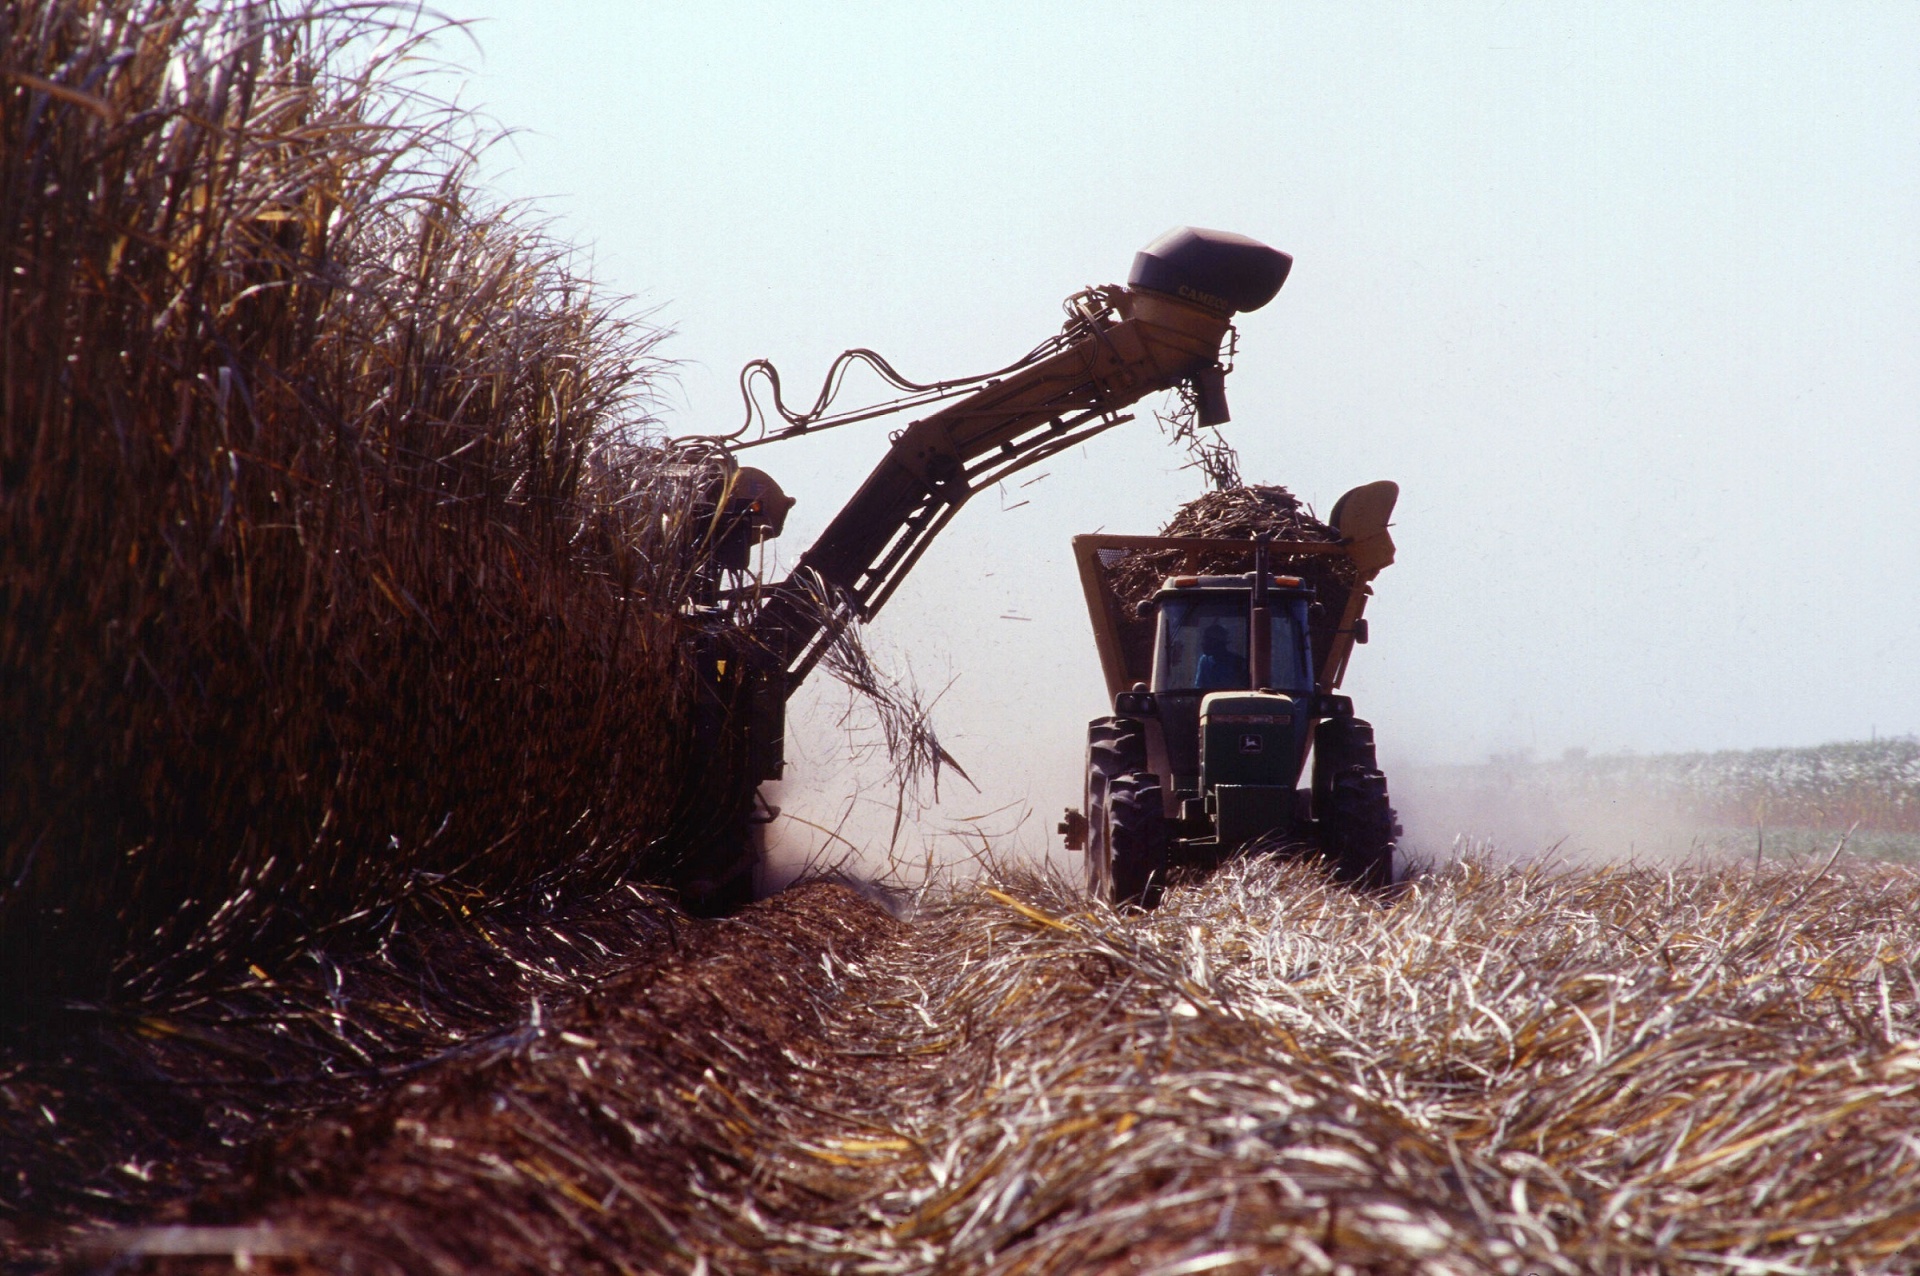 Projeto Brazil Sugarcane promove rodada de negócios internacional na abertura de safra cana, açúcar e etanol